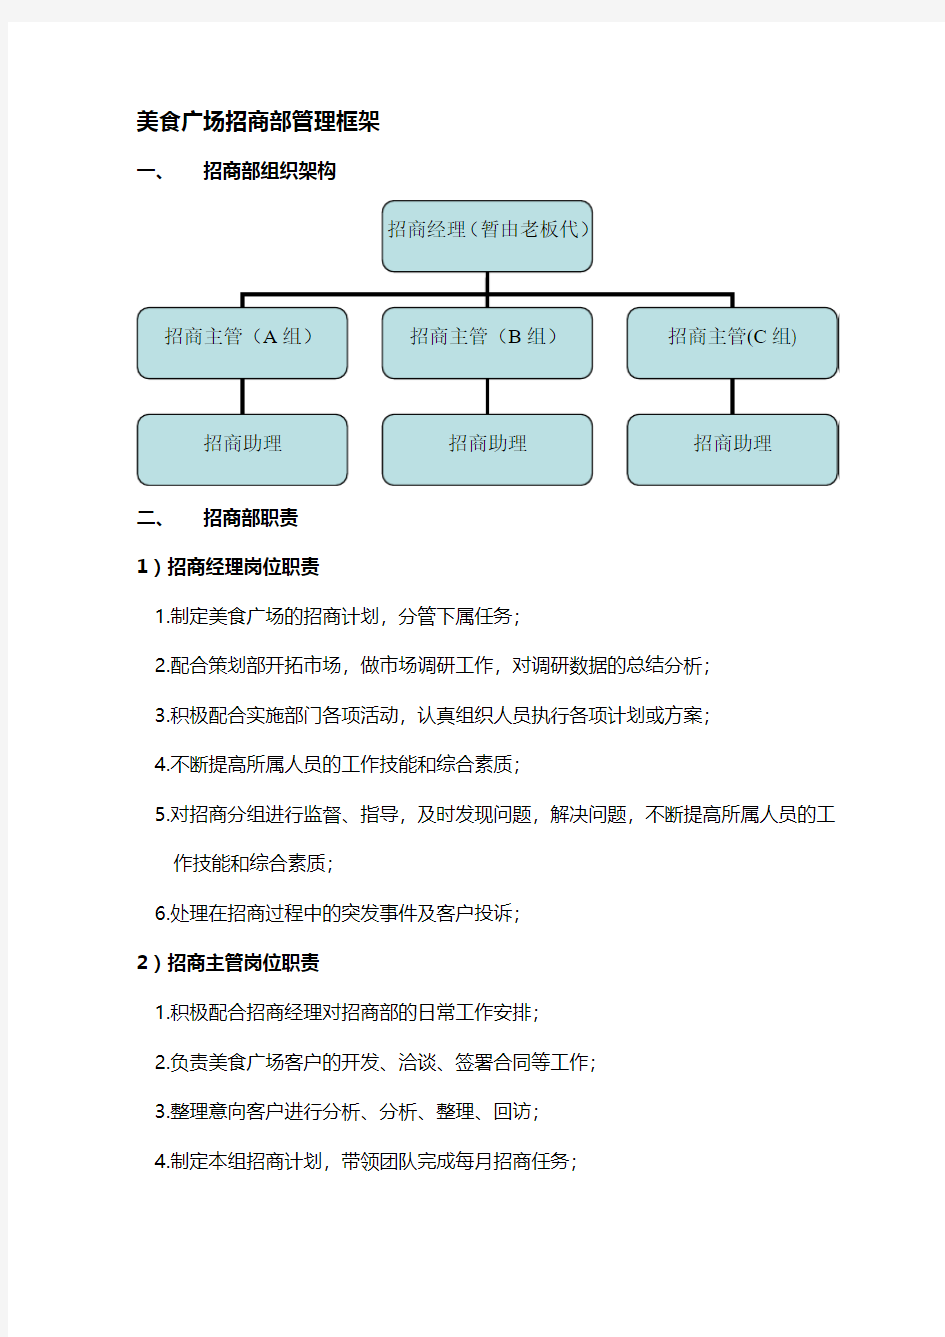 上海七宝宝龙项目食力屋美食广场-美食广场招商部管理框架